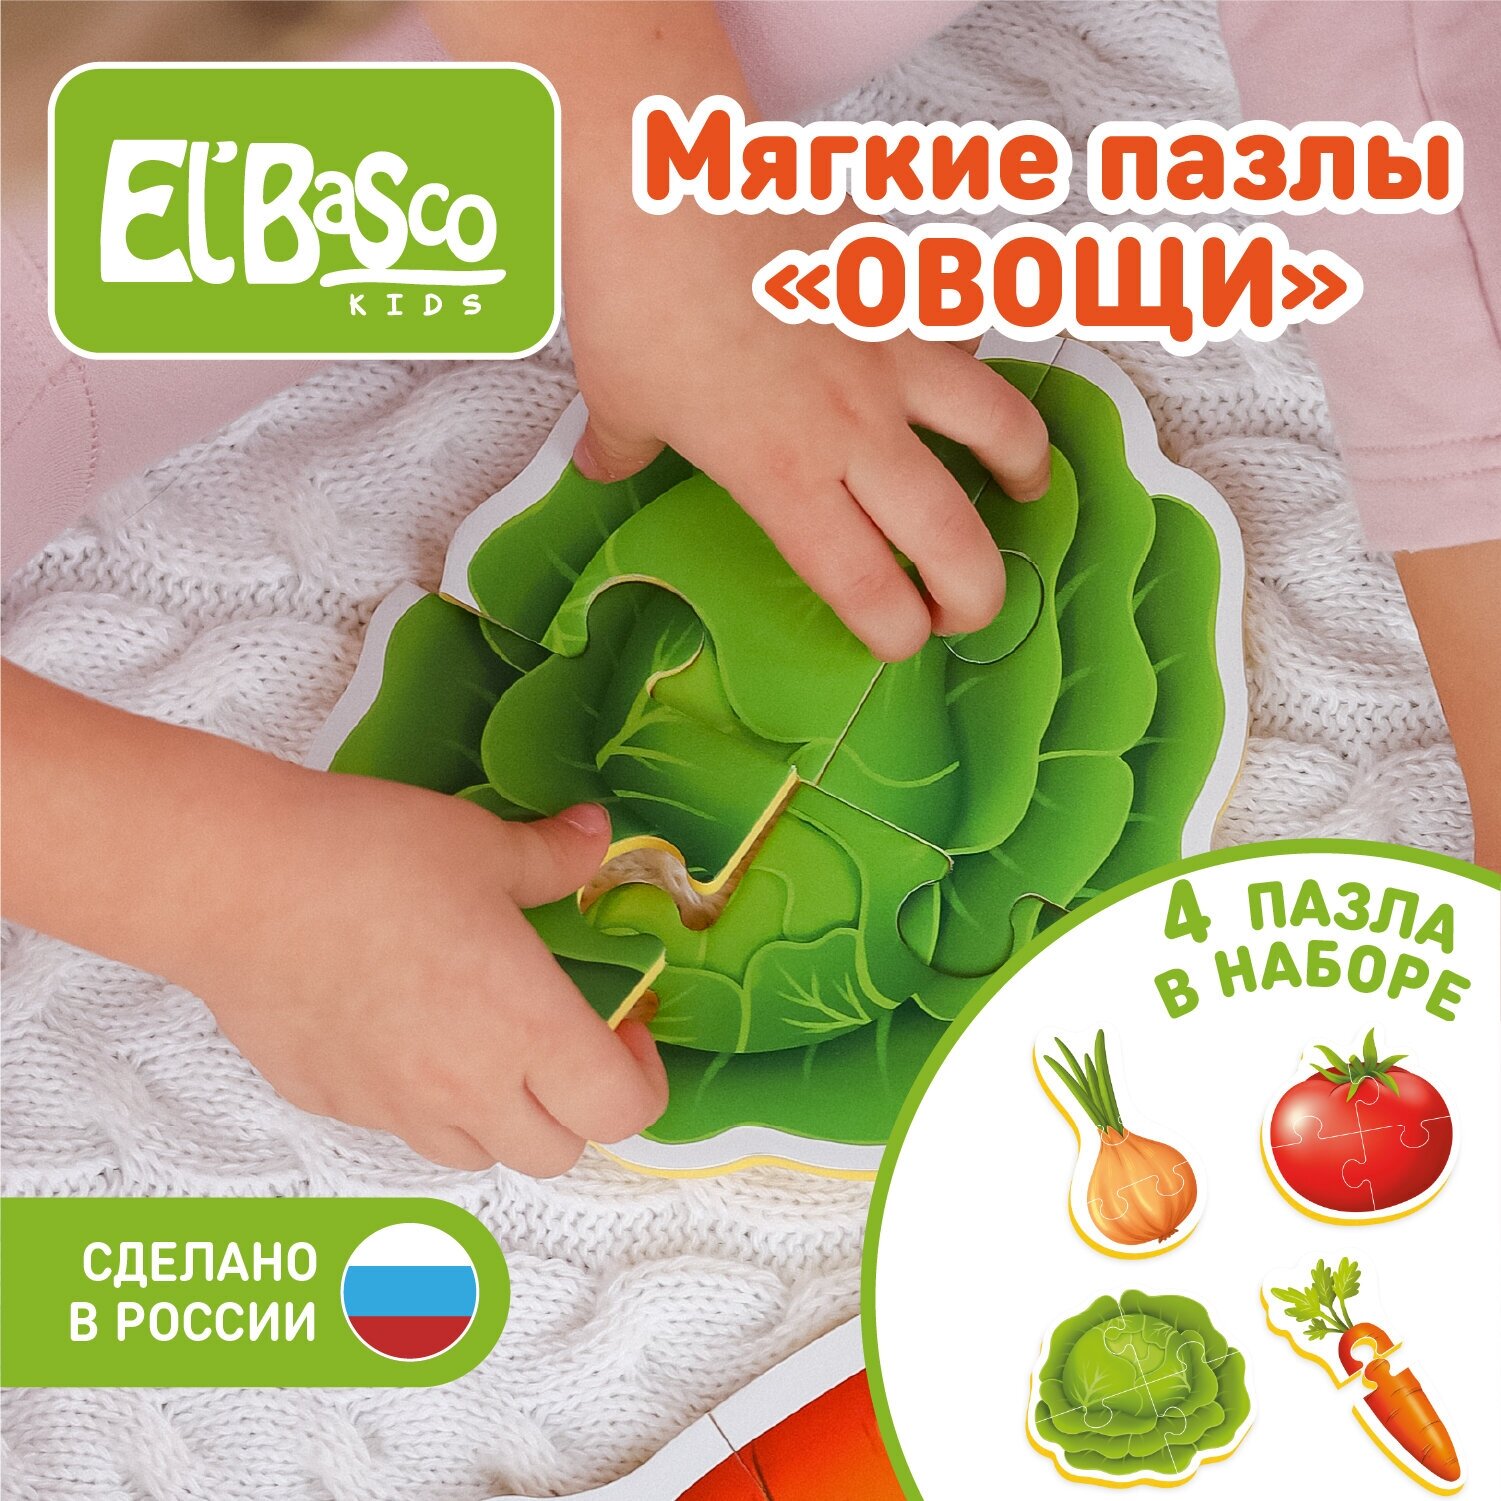 Пазлы для малышей "Овощи", 4 картинки, 13 элементов